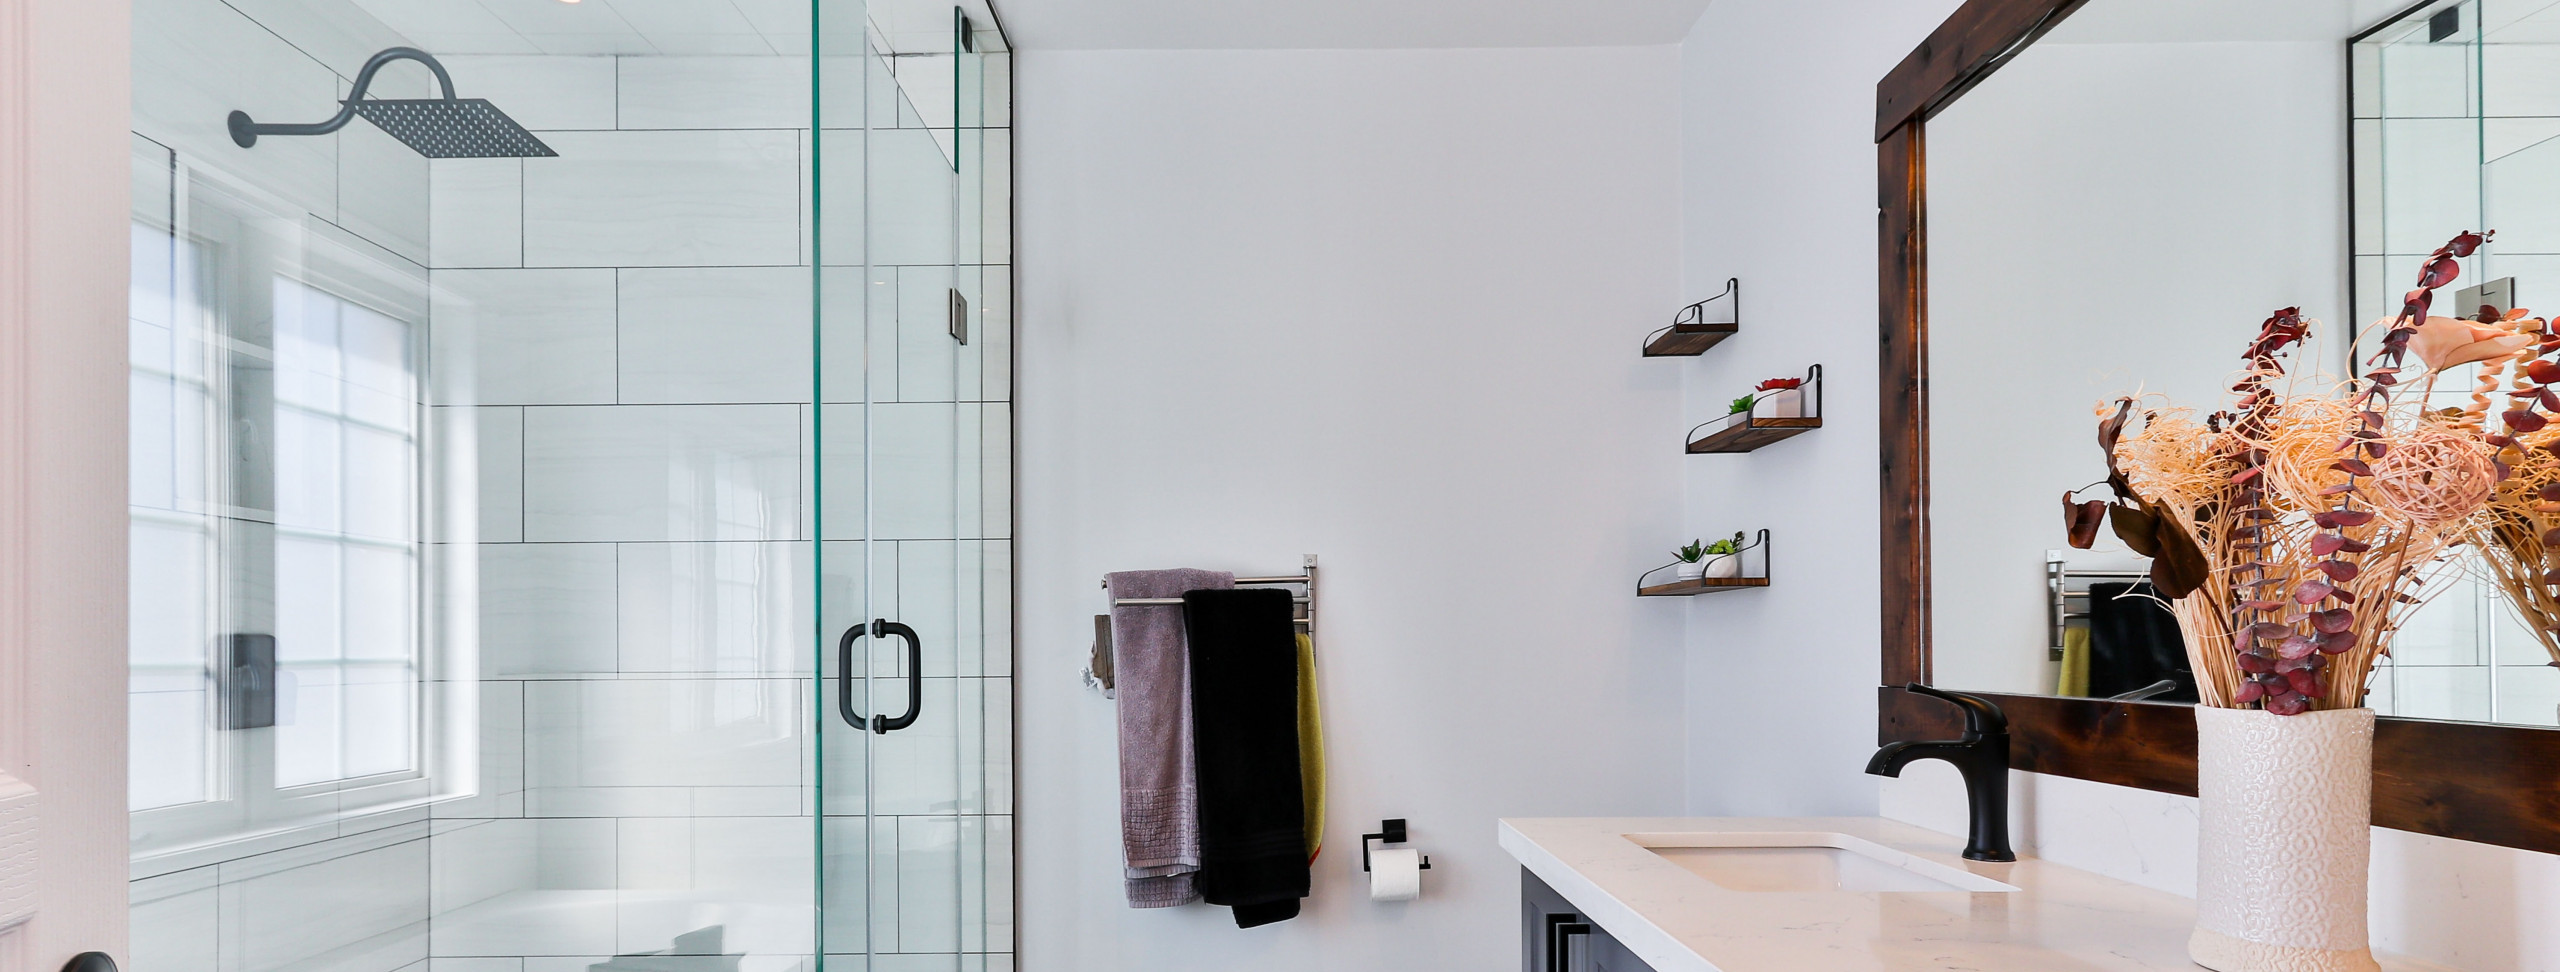 chuveiro-banheiro-moderno-preto-cor-boxe-agua-energia-corte